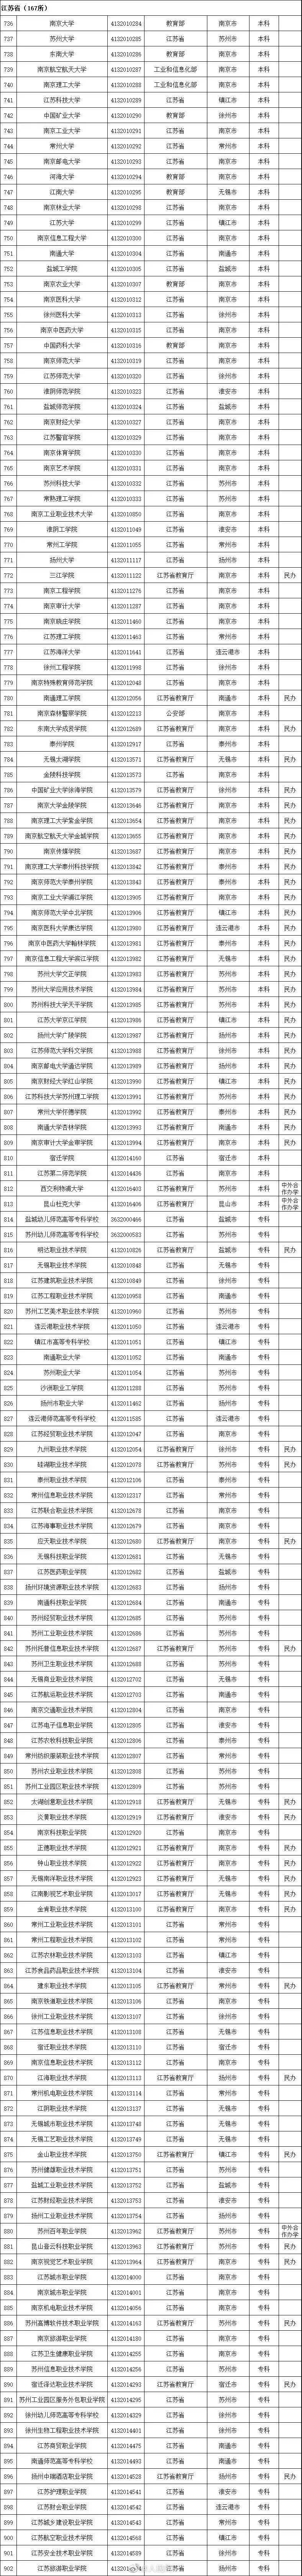 2020年江苏高考前10排名_2020强基计划江苏录取名单,南京10人被清